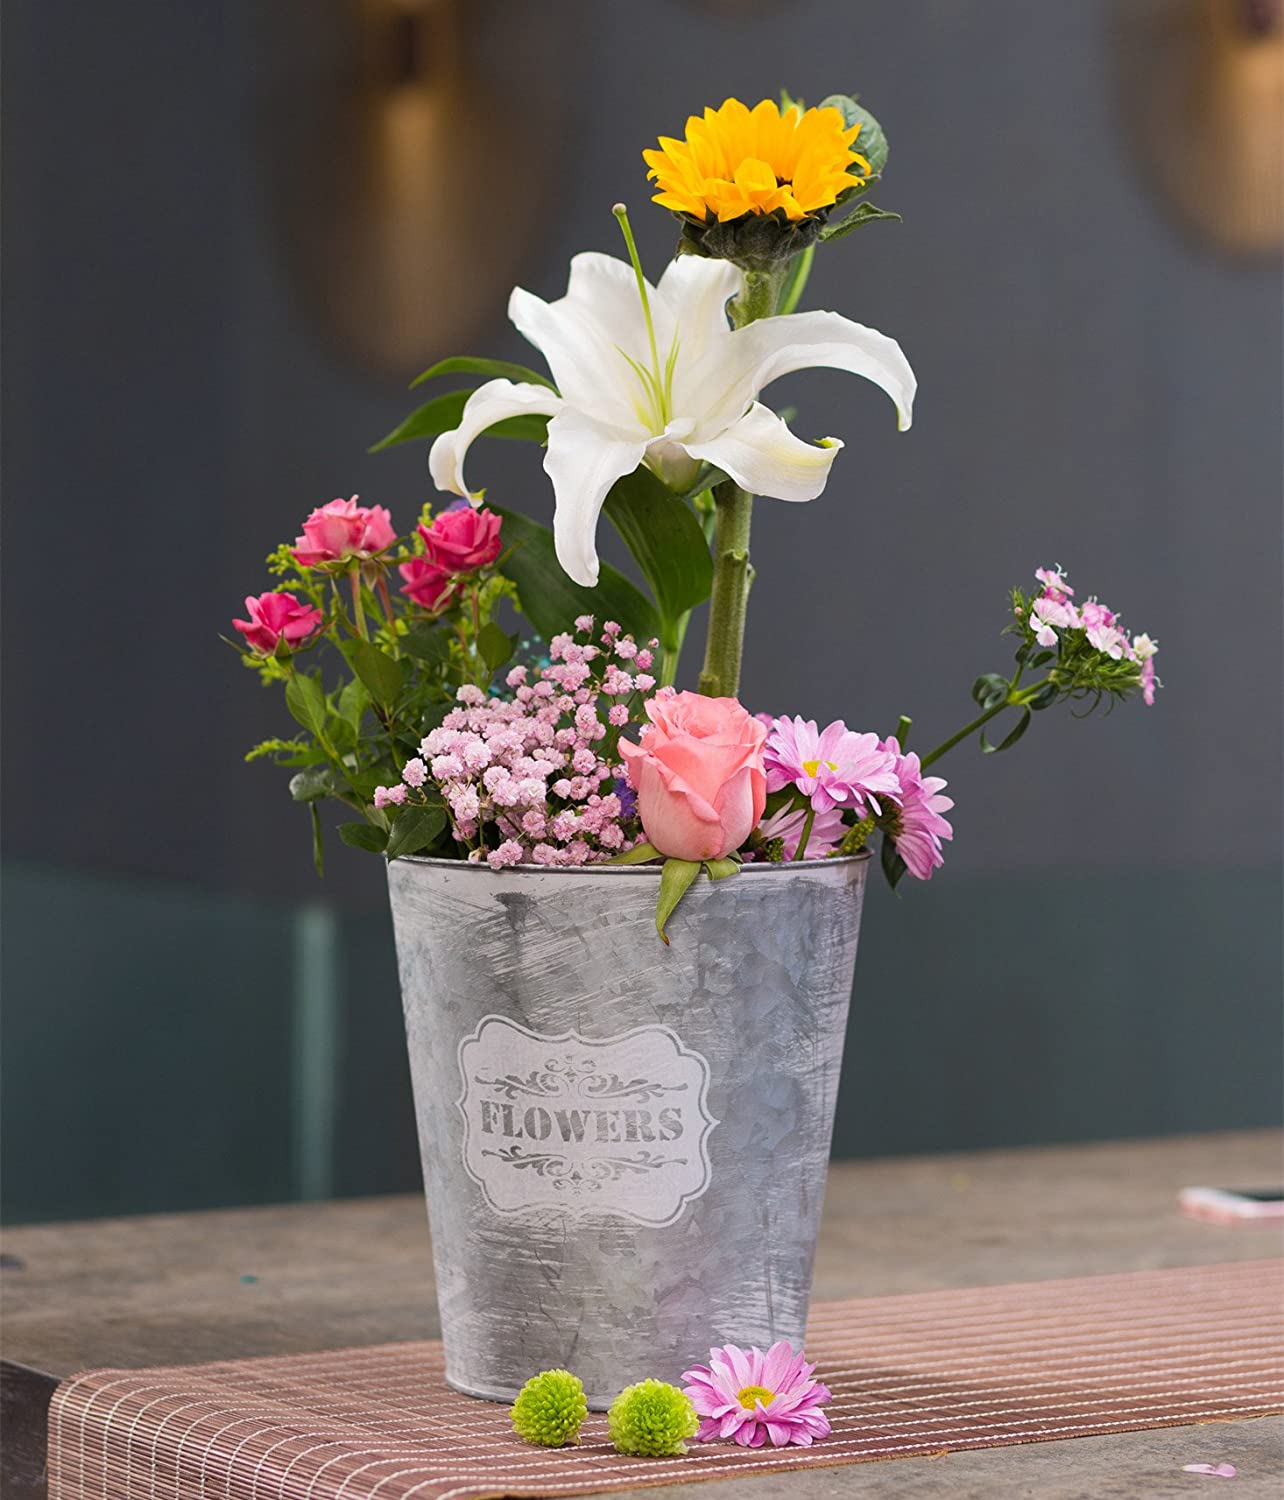 Zinkeimer oder Zinkwanne können als eine nette Alternative zu langweiligen Blumentöpfen verwendet werden.